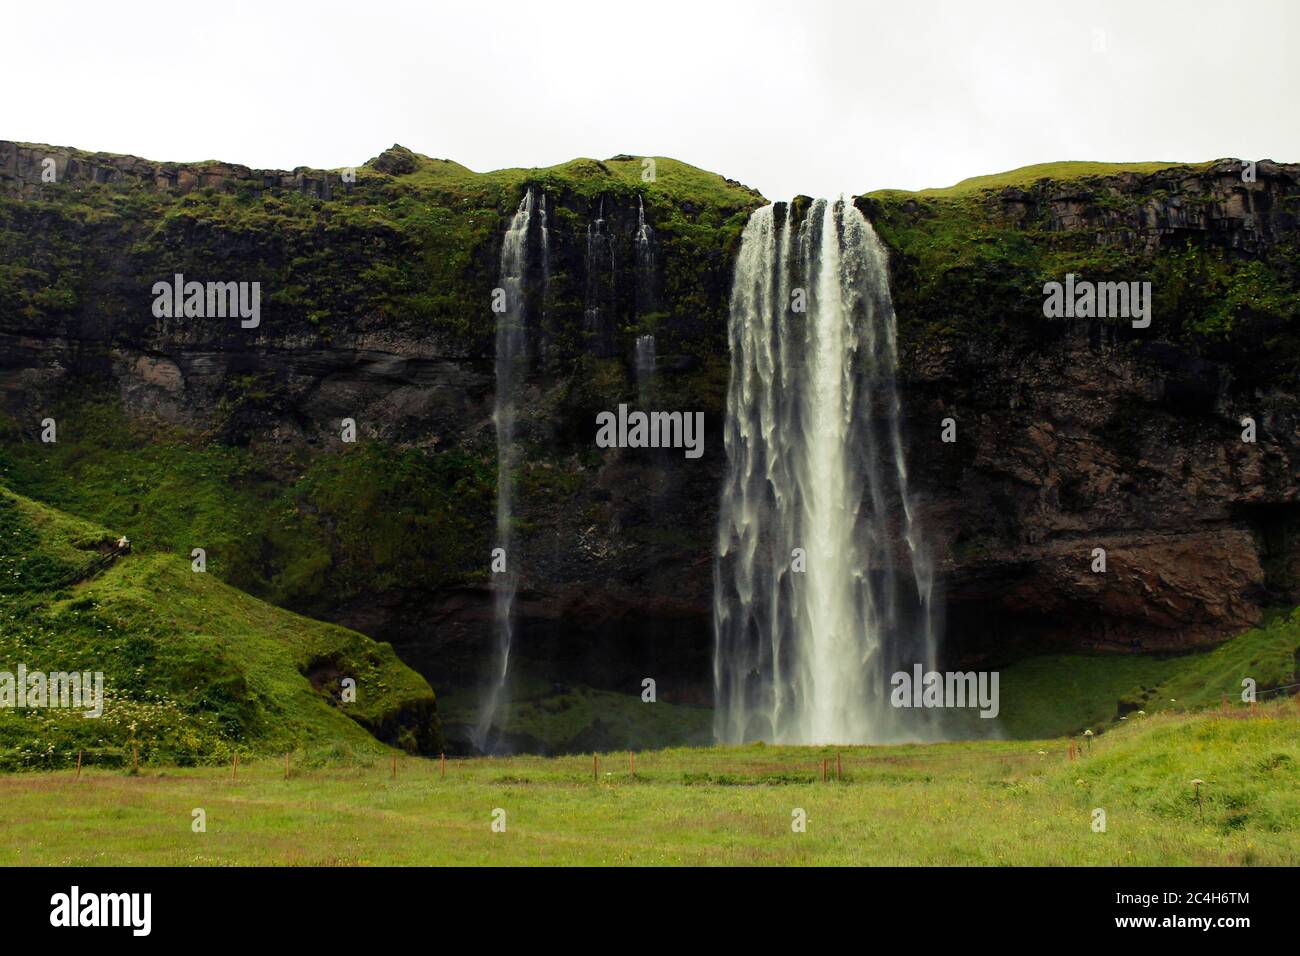 La cascade de Seljalandsfoss, une destination touristique bien connue en Islande Banque D'Images